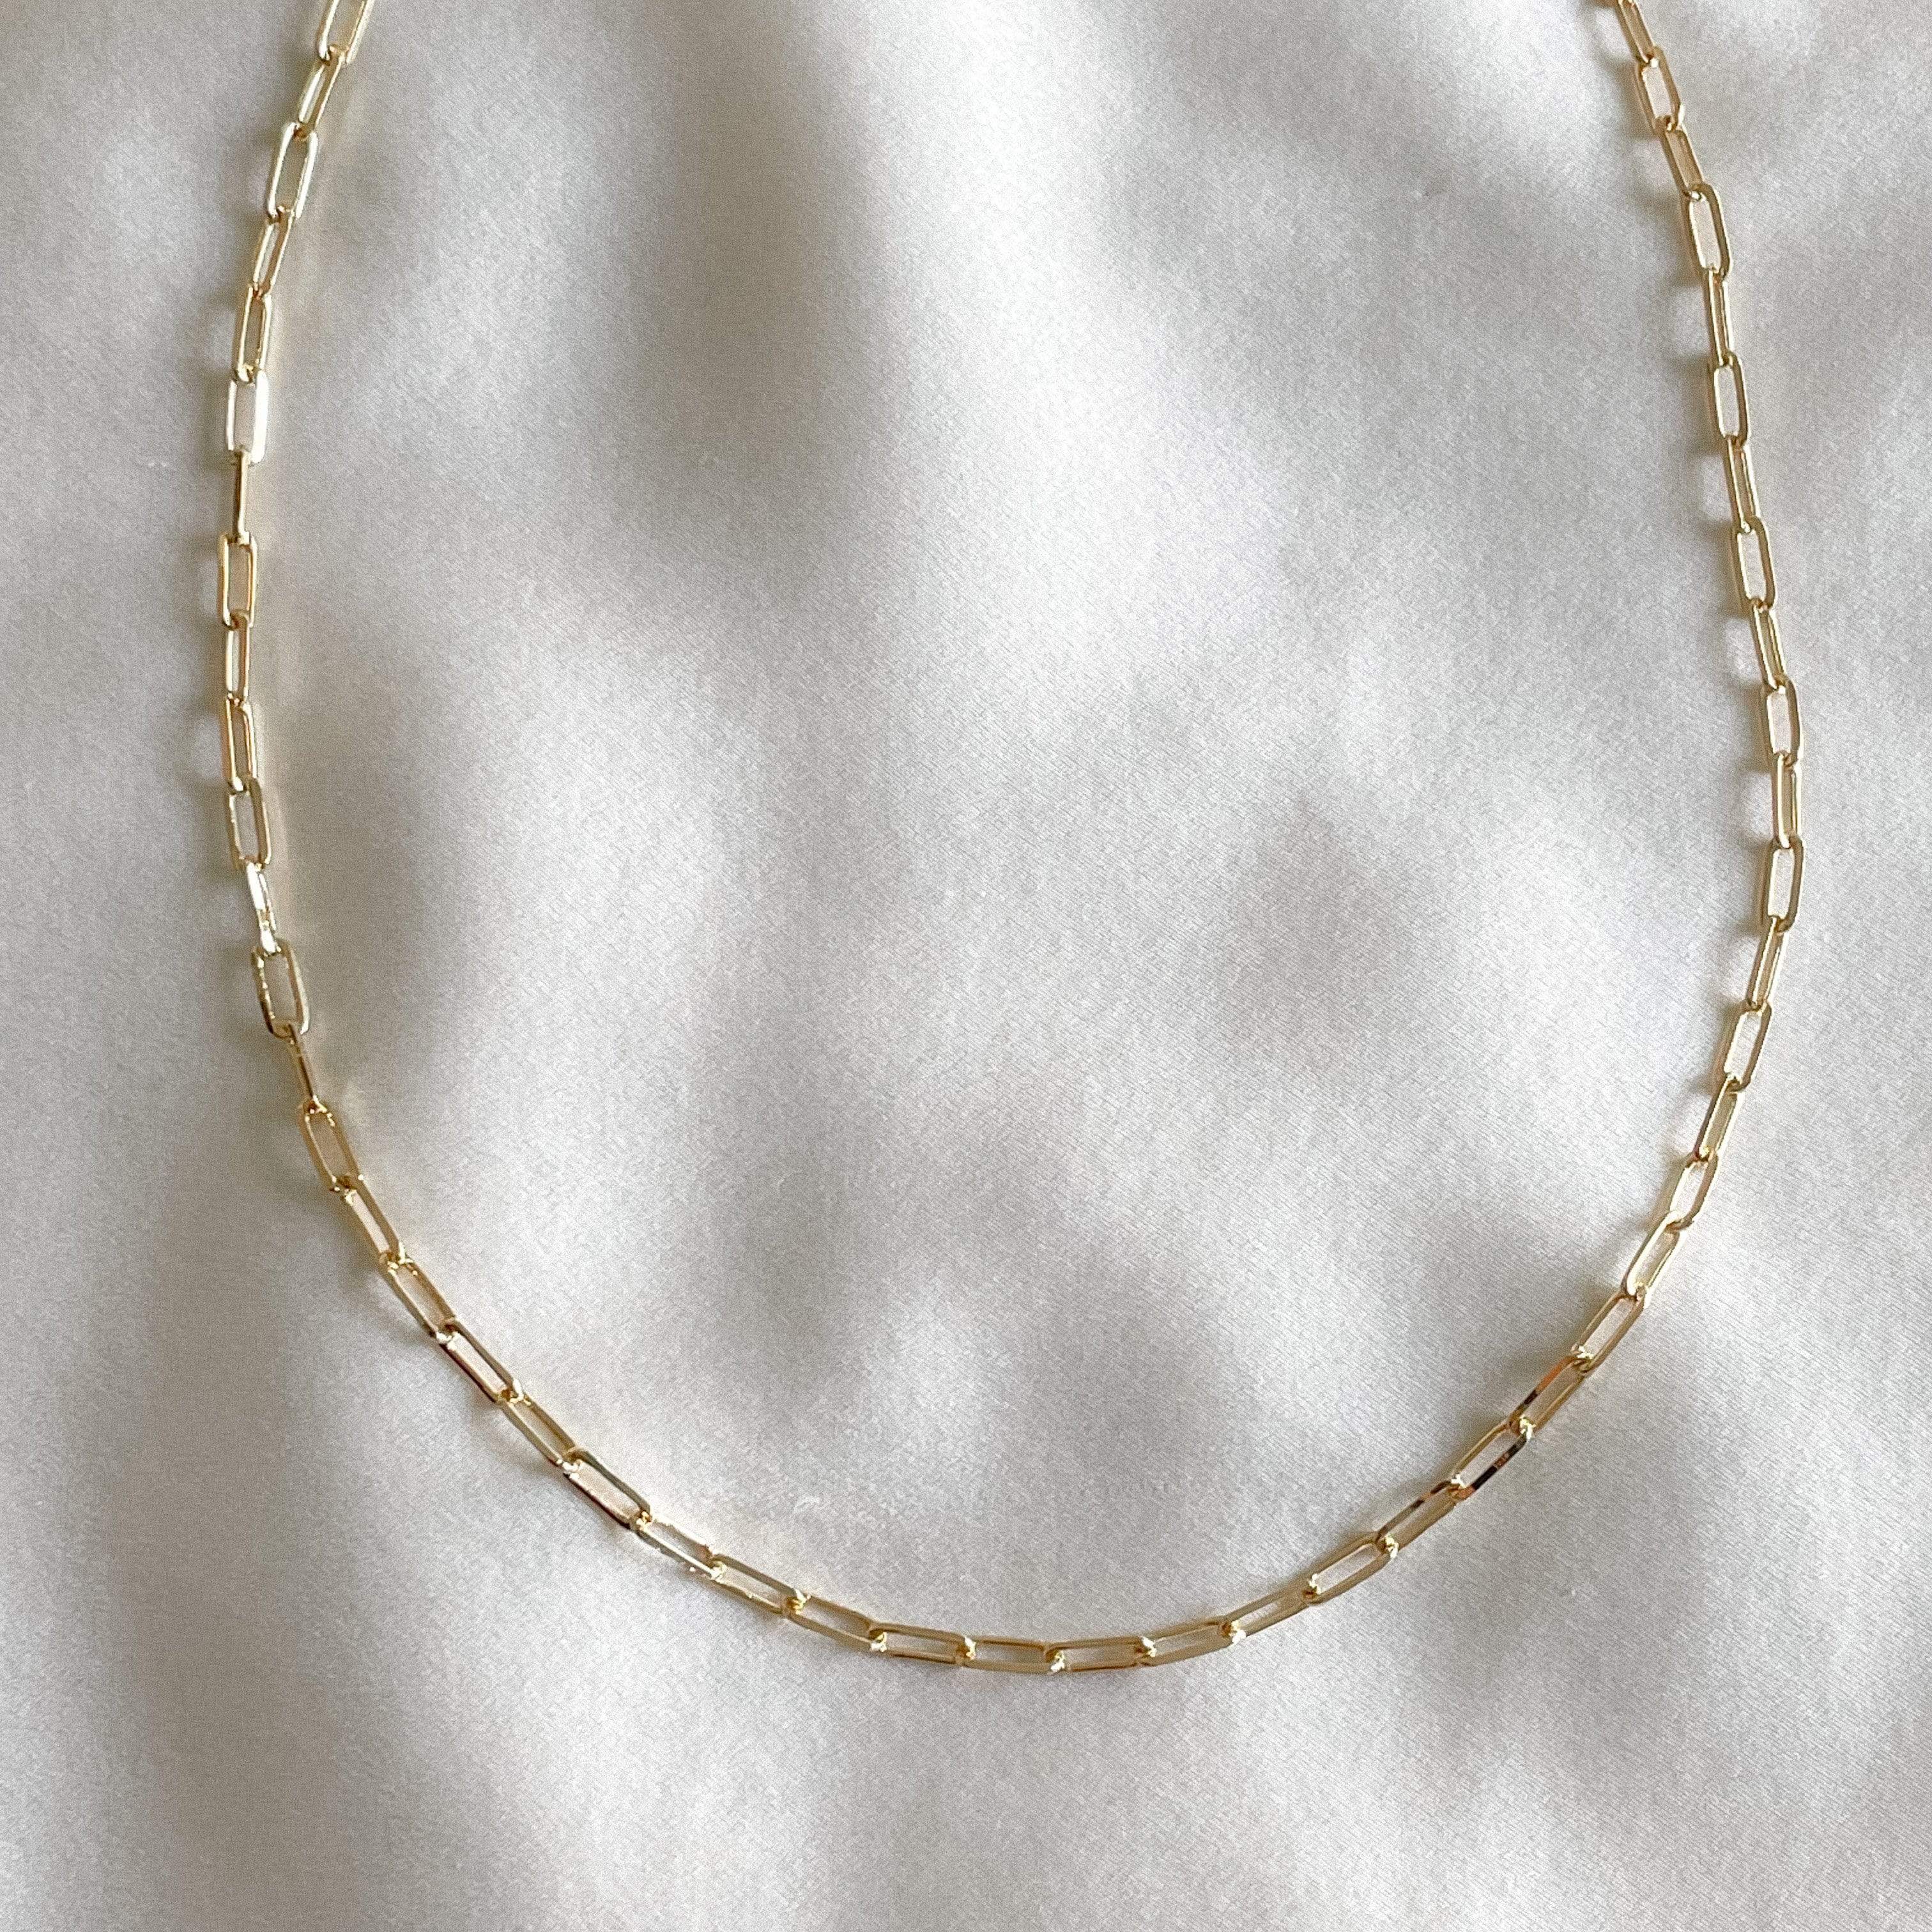 LE sensor Chain Paige Chain Necklace - 20”